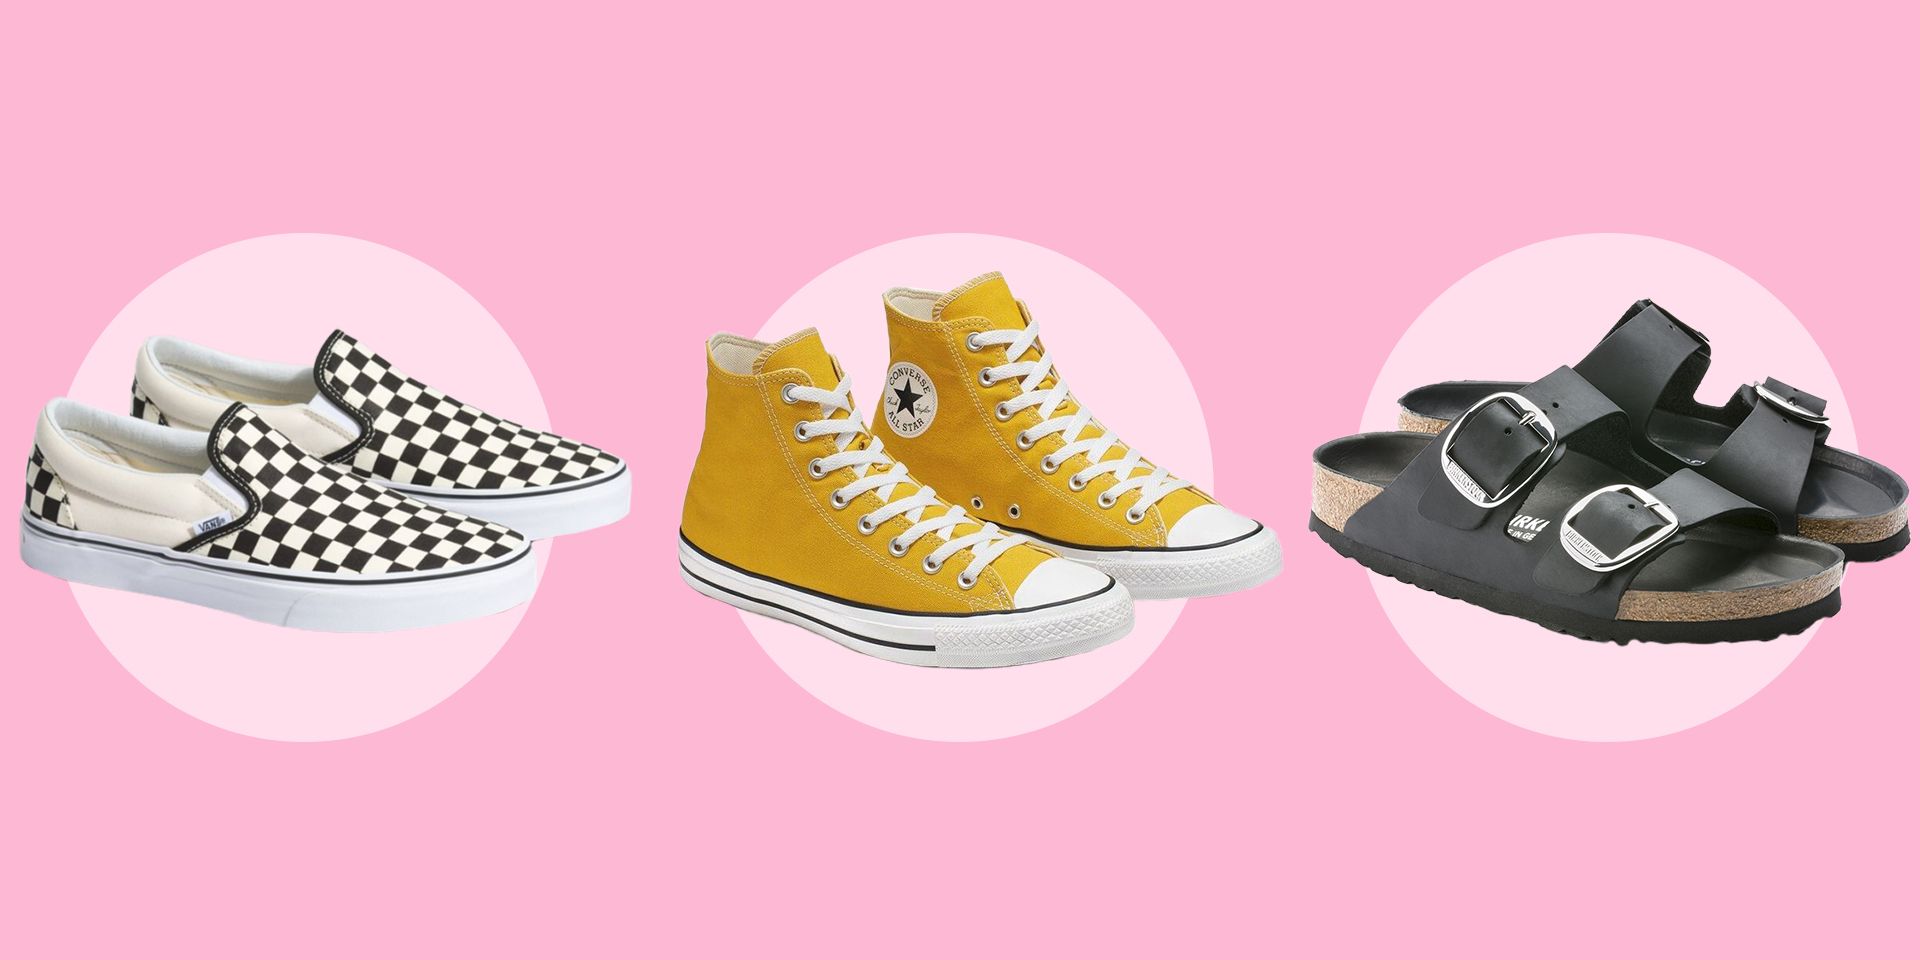 oplichterij Verfijnen schouder 6 VSCO Girl Shoes – VSCO Girl Birkenstocks, Vans, and Crocs